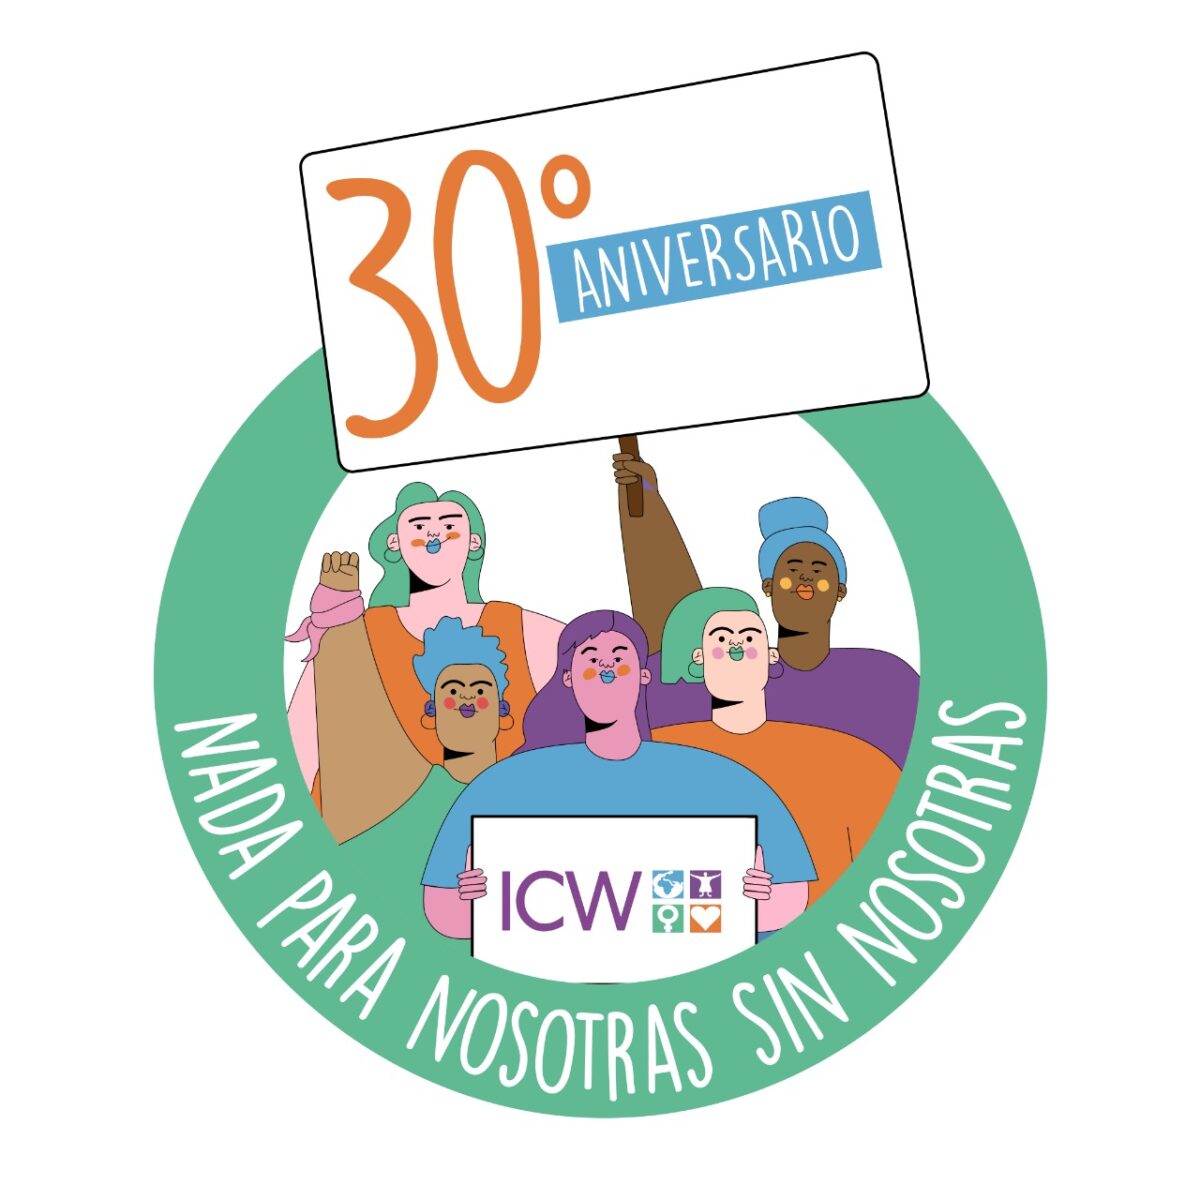 Serie de podcasts por el 30° Aniversario de ICW